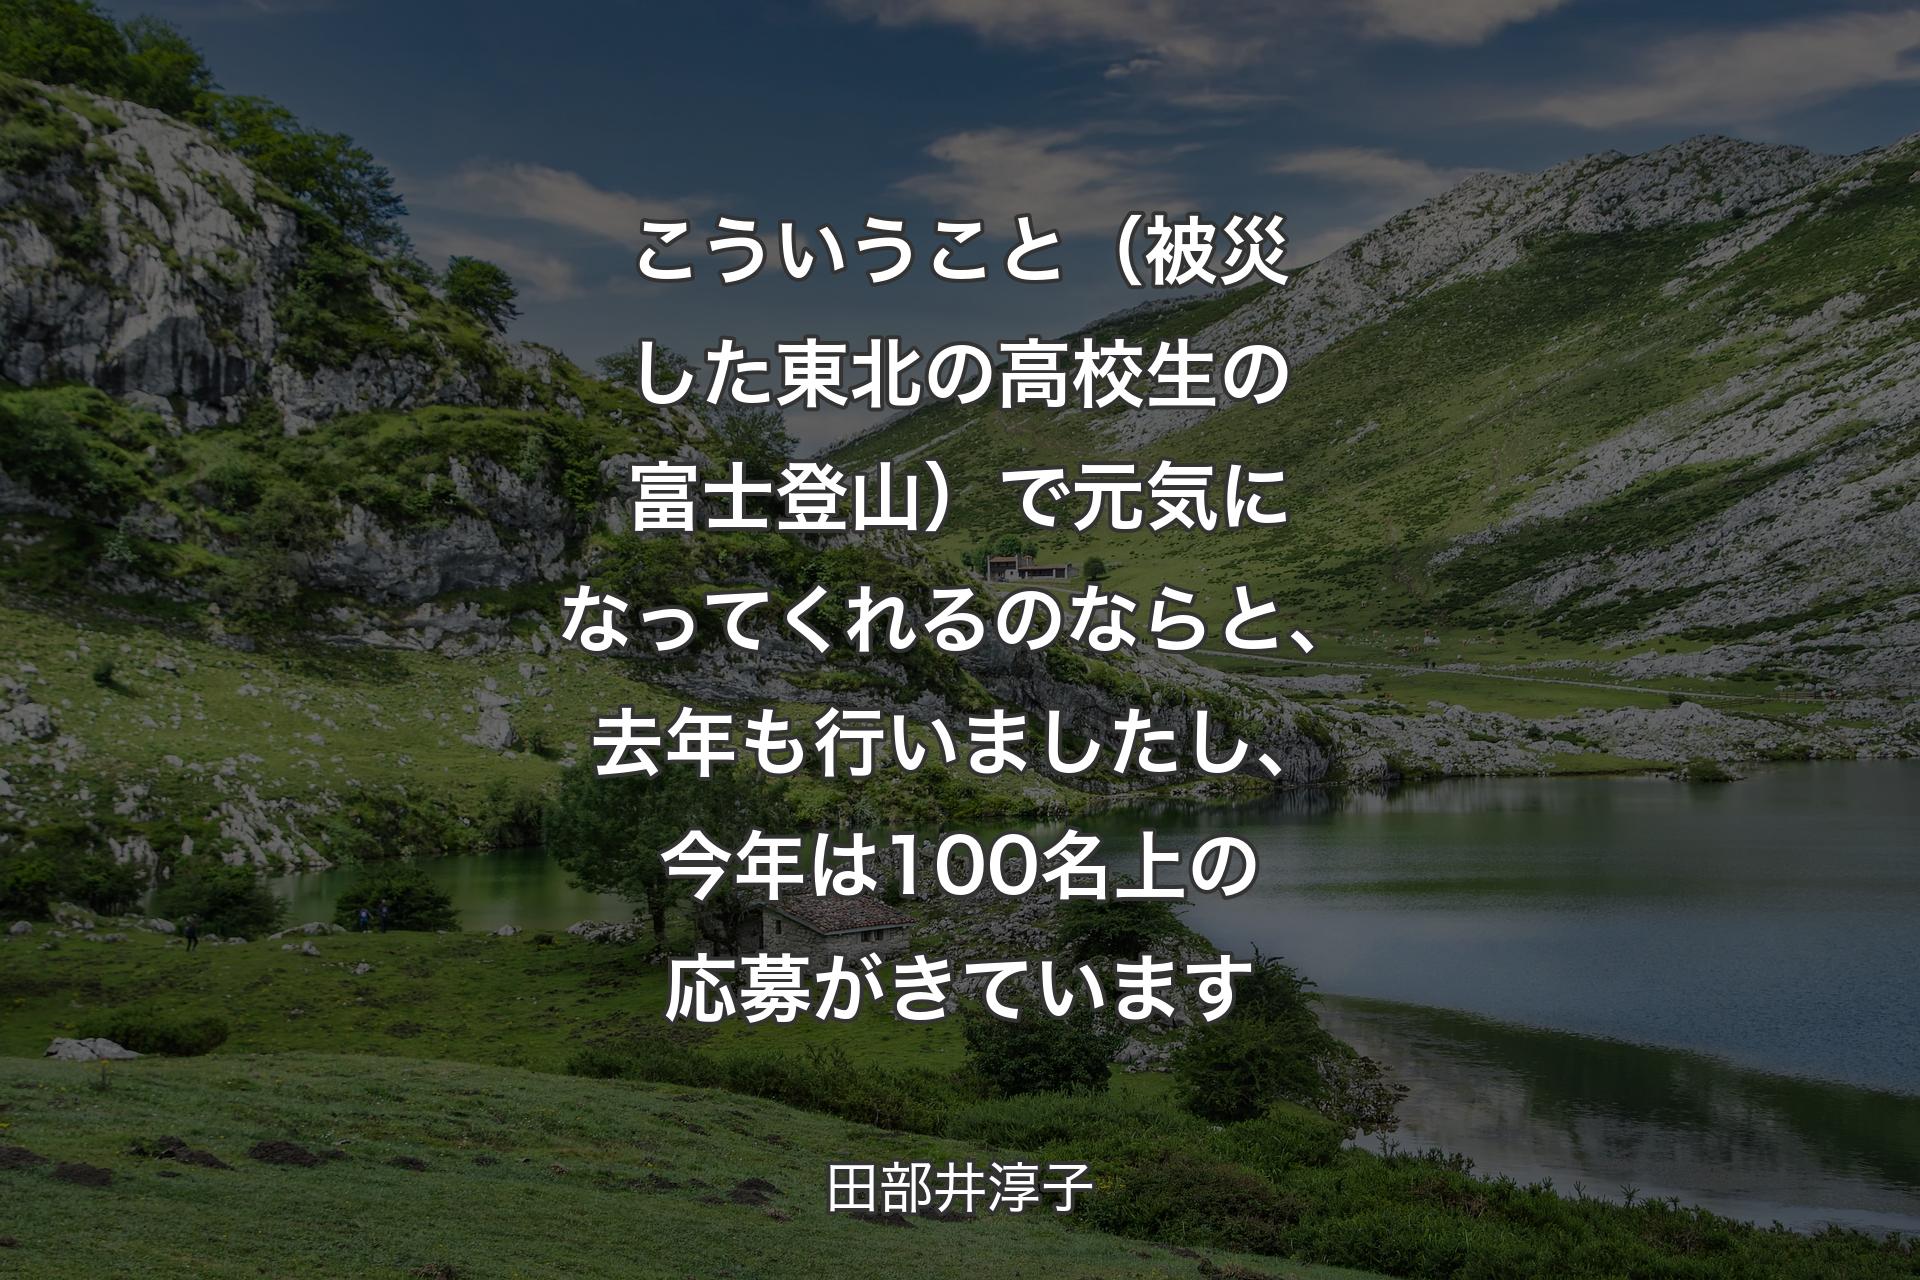 【背景1】こういうこと（被災した東北の高校生の富士登山）で元気になってくれるのならと、去年も行いましたし、今年は100名上の応募がきています - 田部井淳子